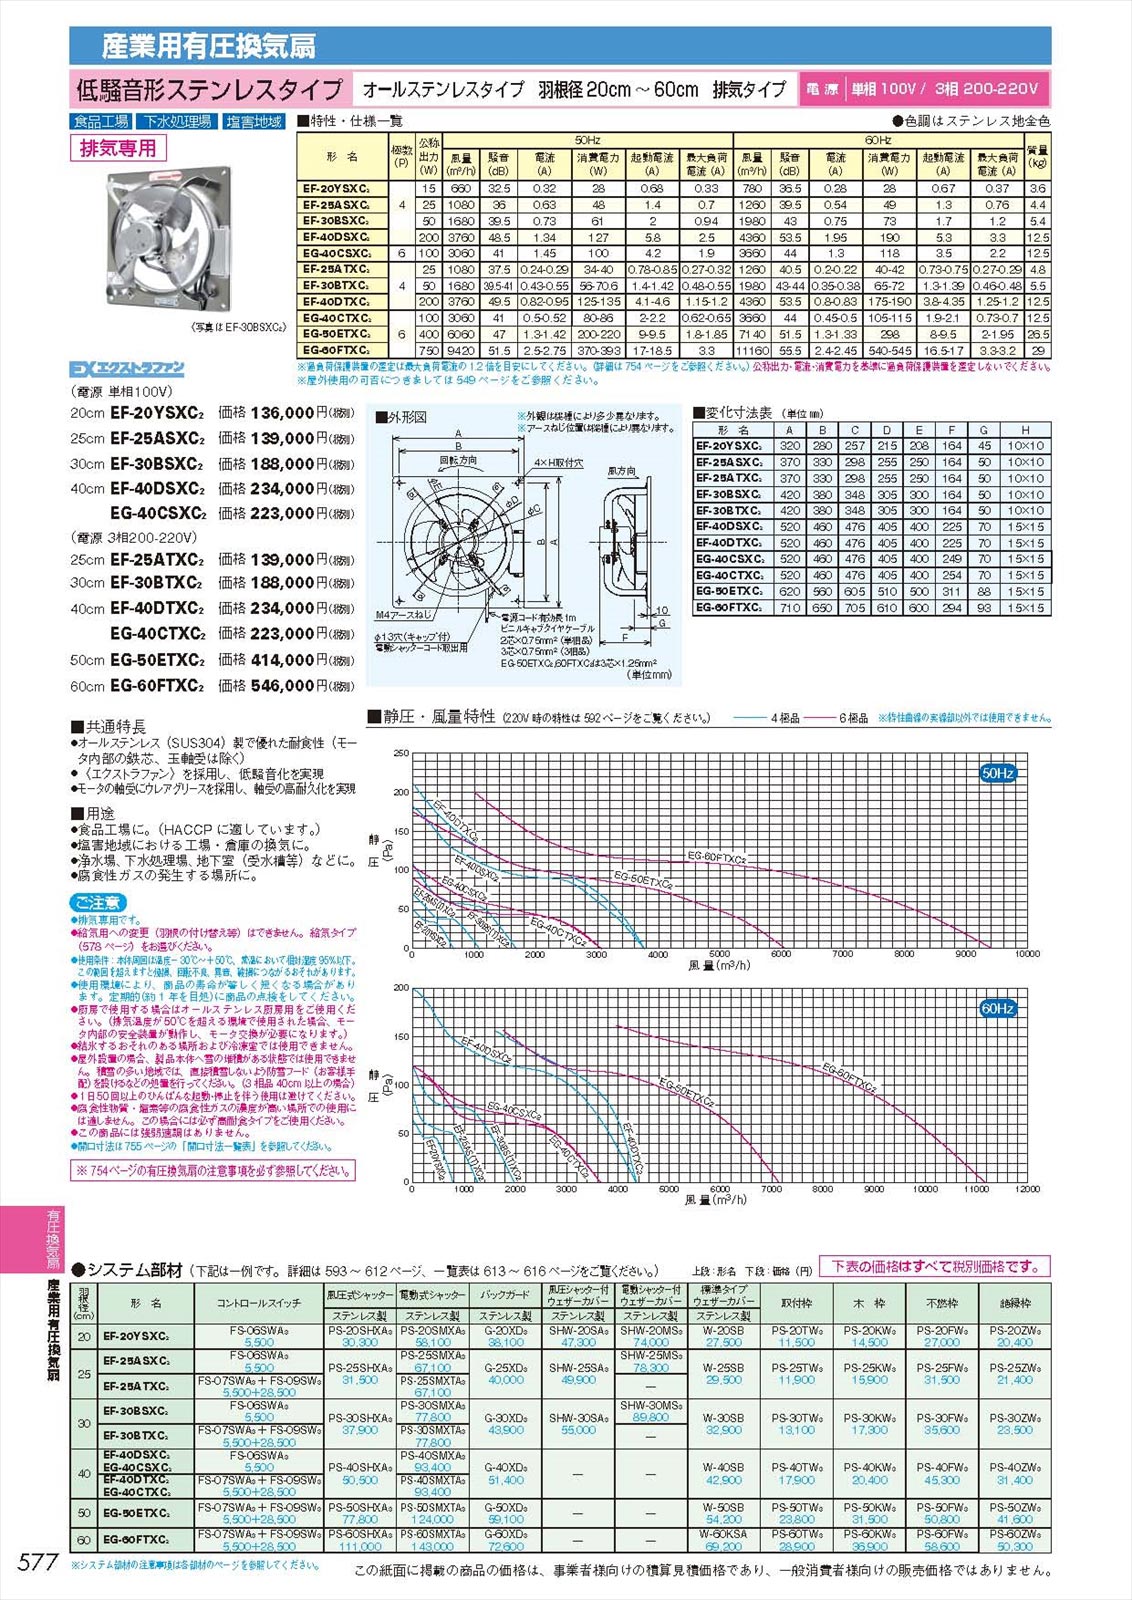 三菱電機 【VL-15PZM4-R】 三菱電機 ロスナイ・セントラル換気システム яэ∀ 空調設備